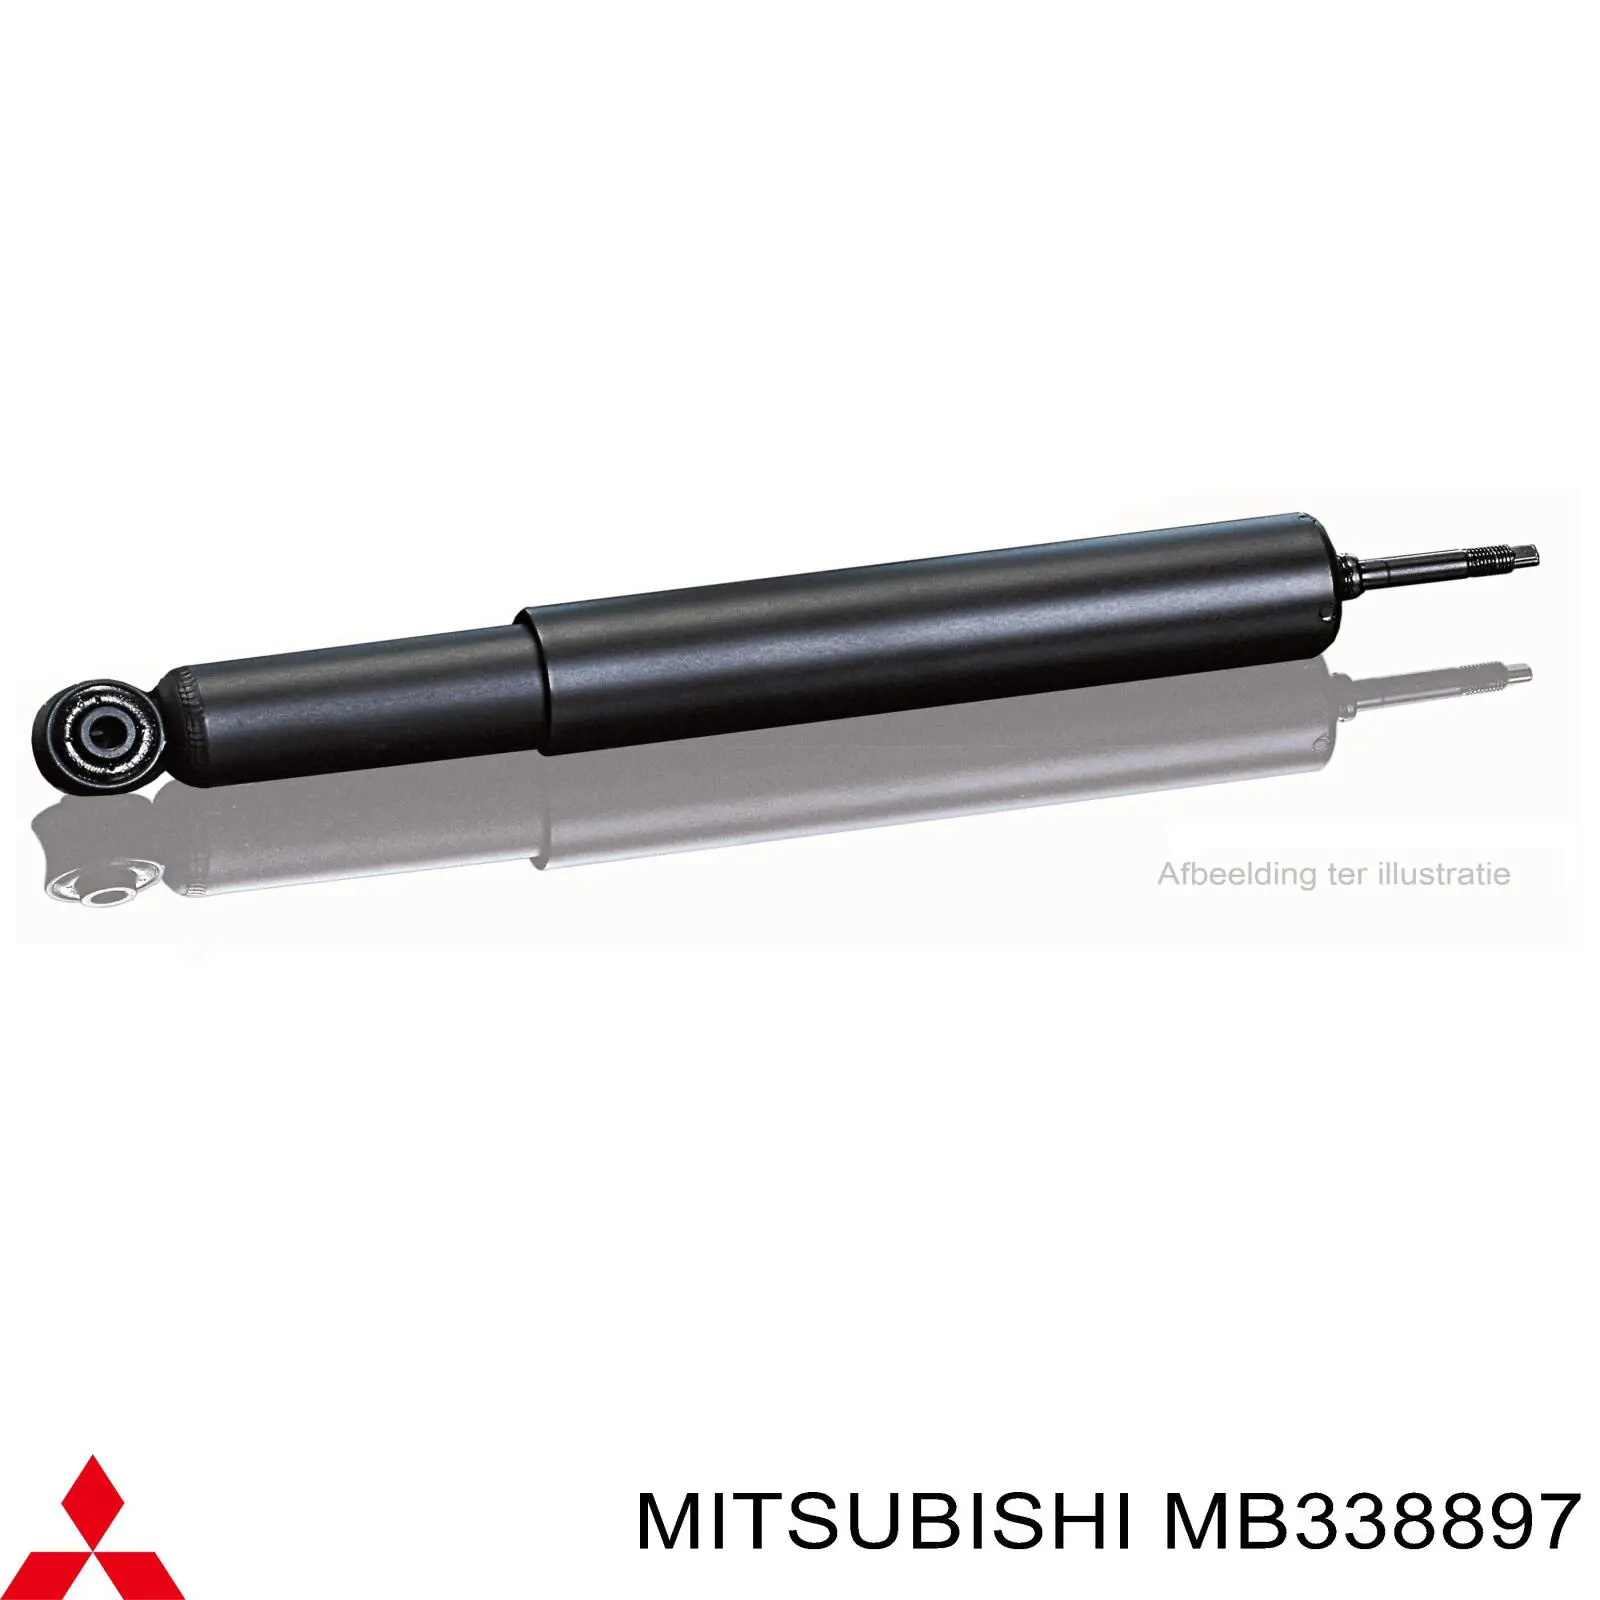 MB338897 Mitsubishi amortiguador trasero